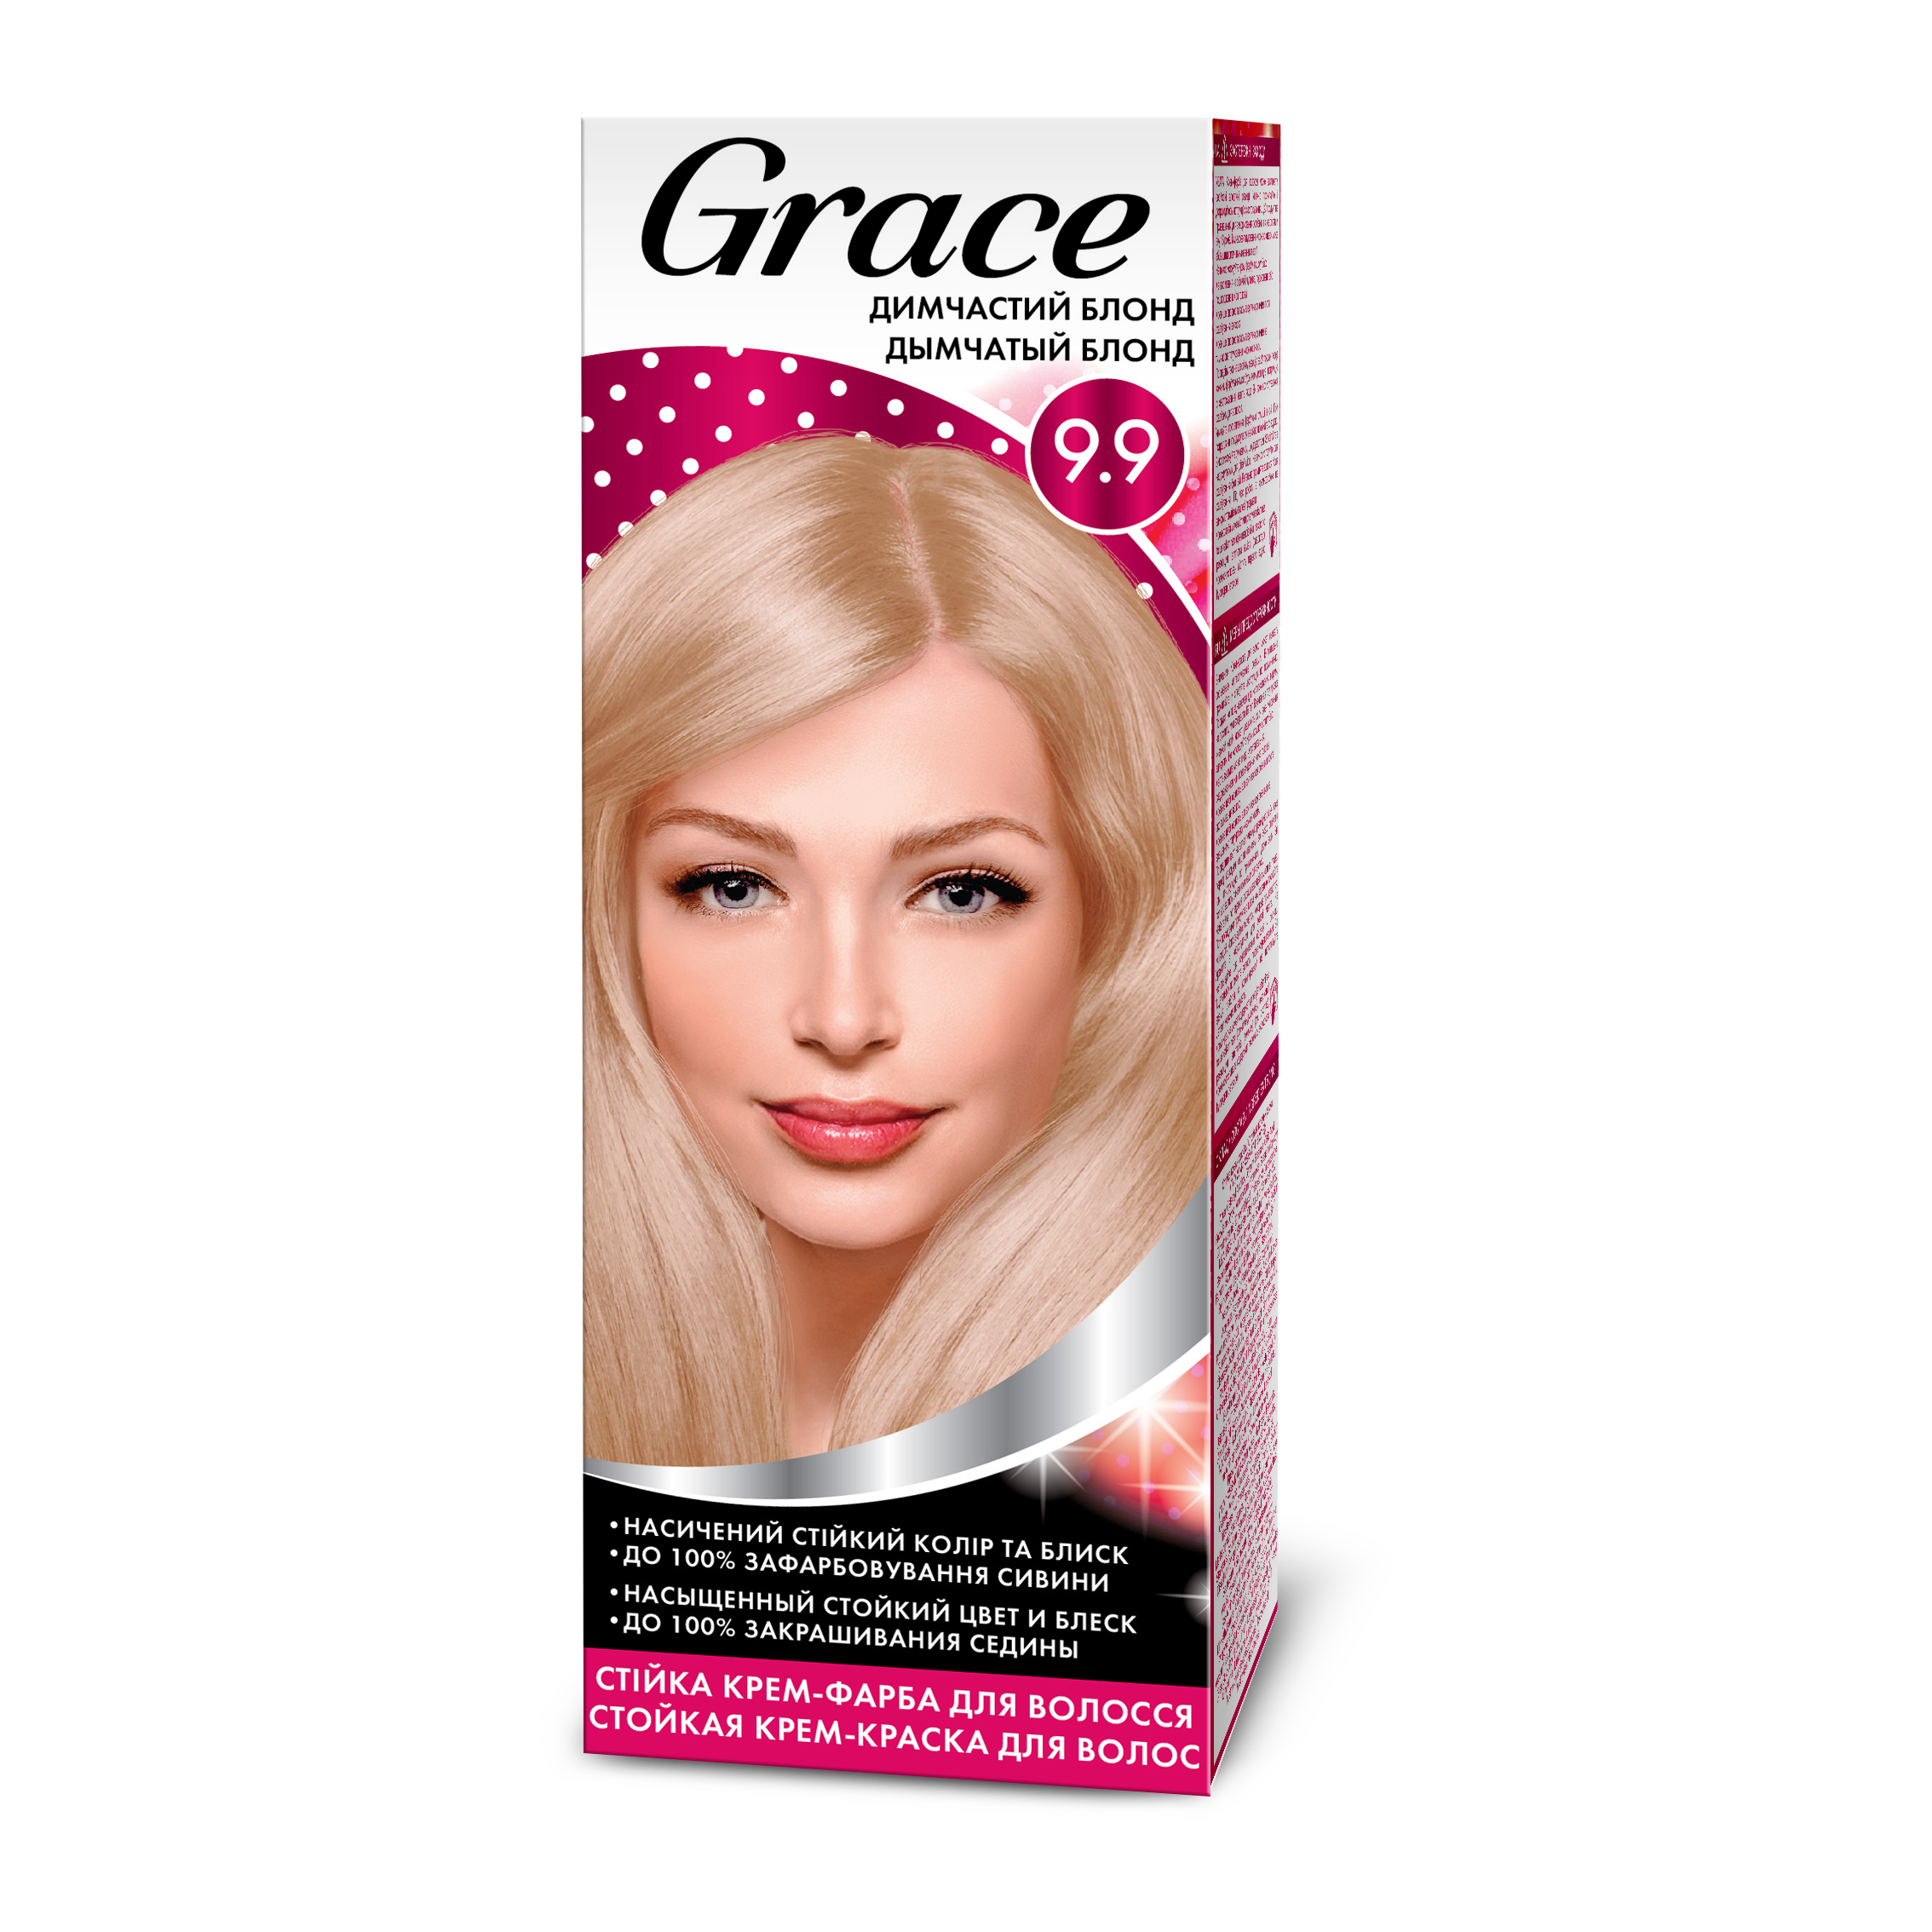 Стійка крем-фарба для волосся Grace Димчастий блонд 9.9